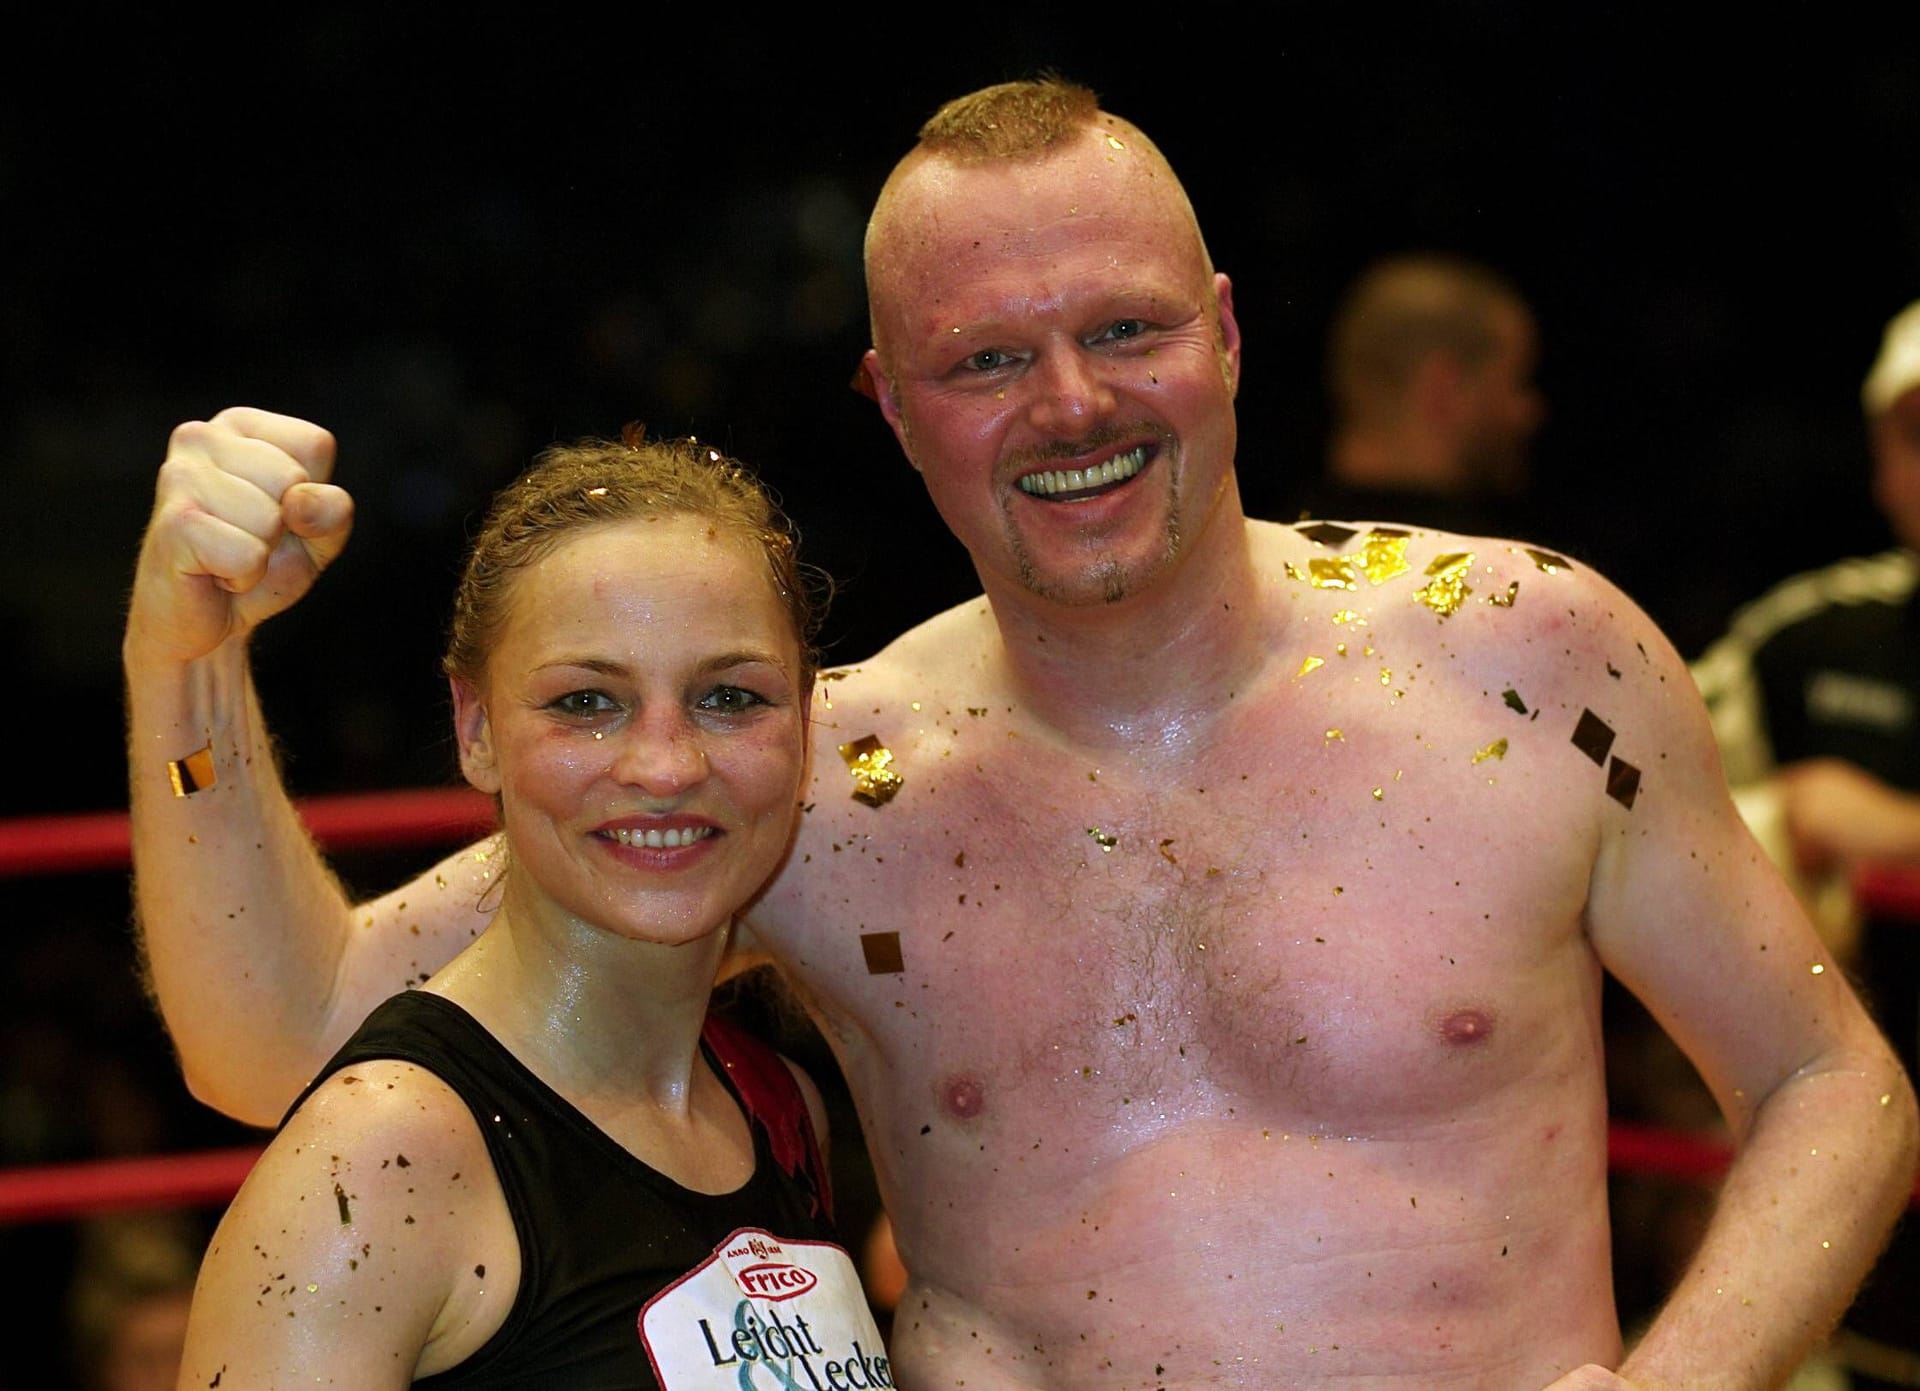 Regina Halmich und Stefan Raab haben bereits zweimal gegeneinander gekämpft.